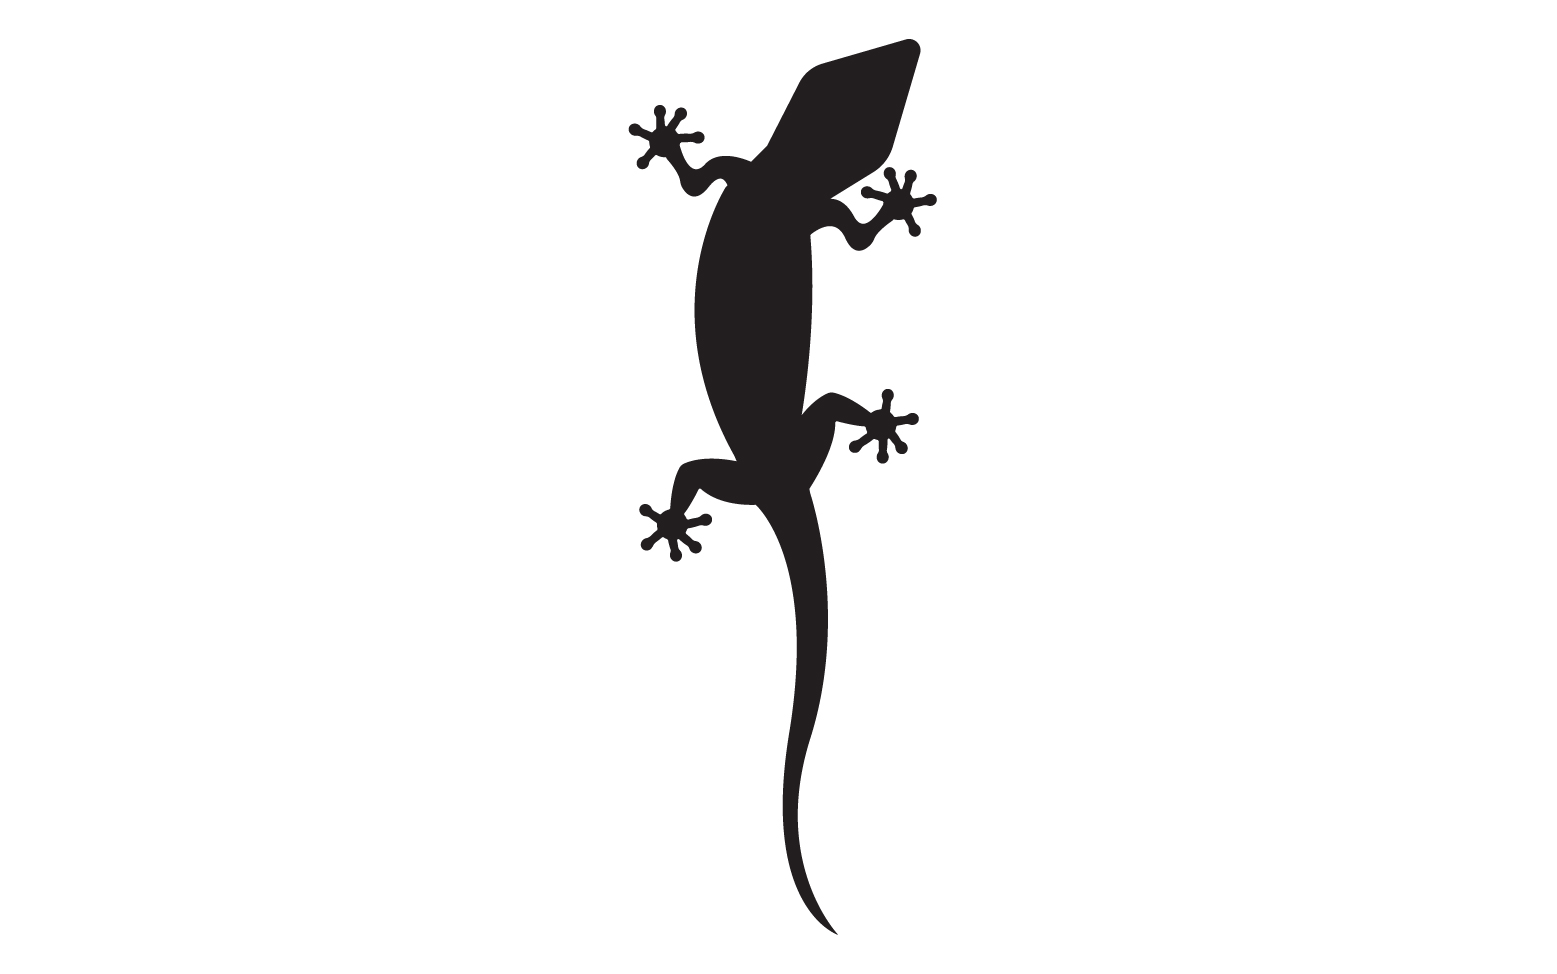 Lizard chameleon home lizard logo v51